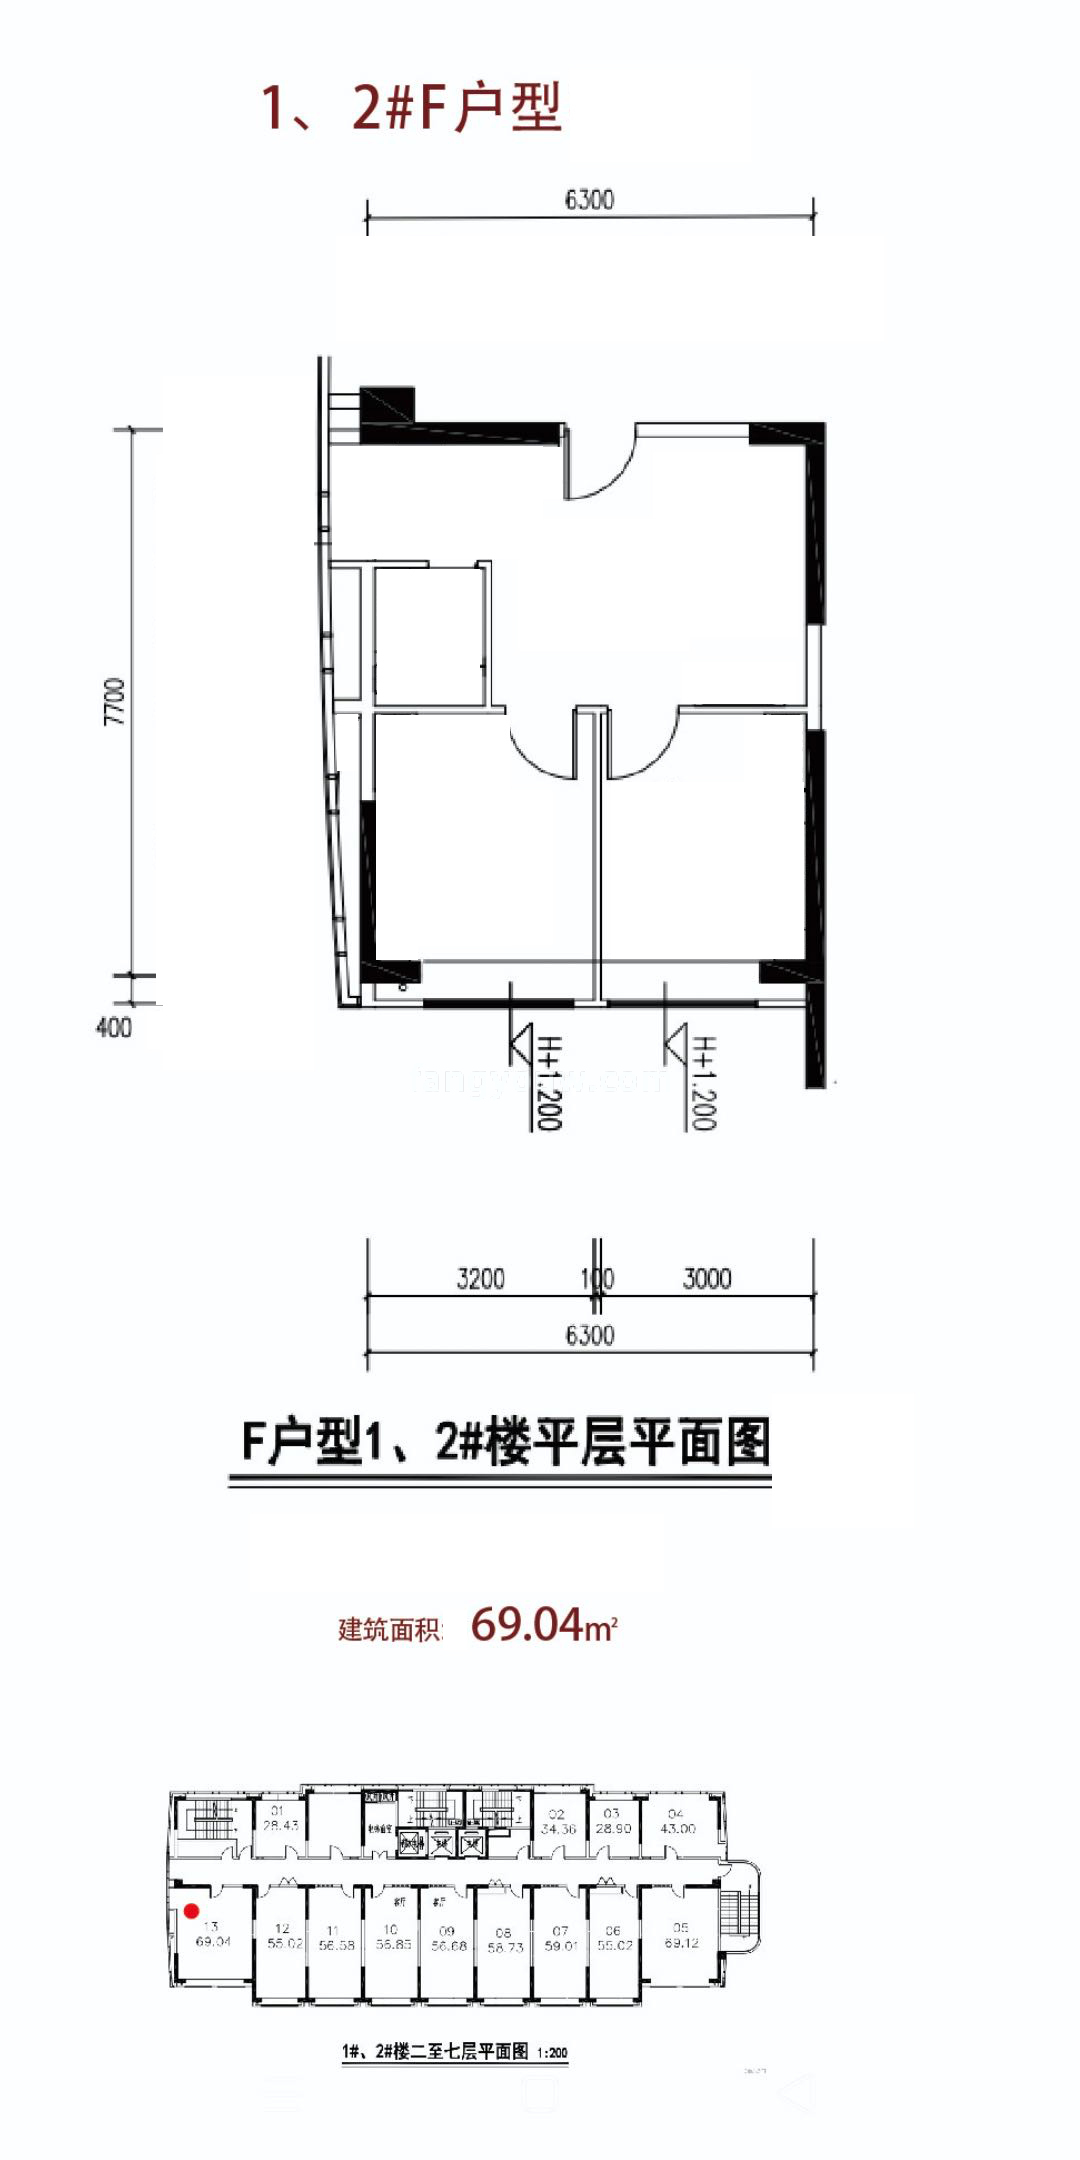 广电航天海晟 商业办公 1、2#F户型 建筑面积69.04㎡